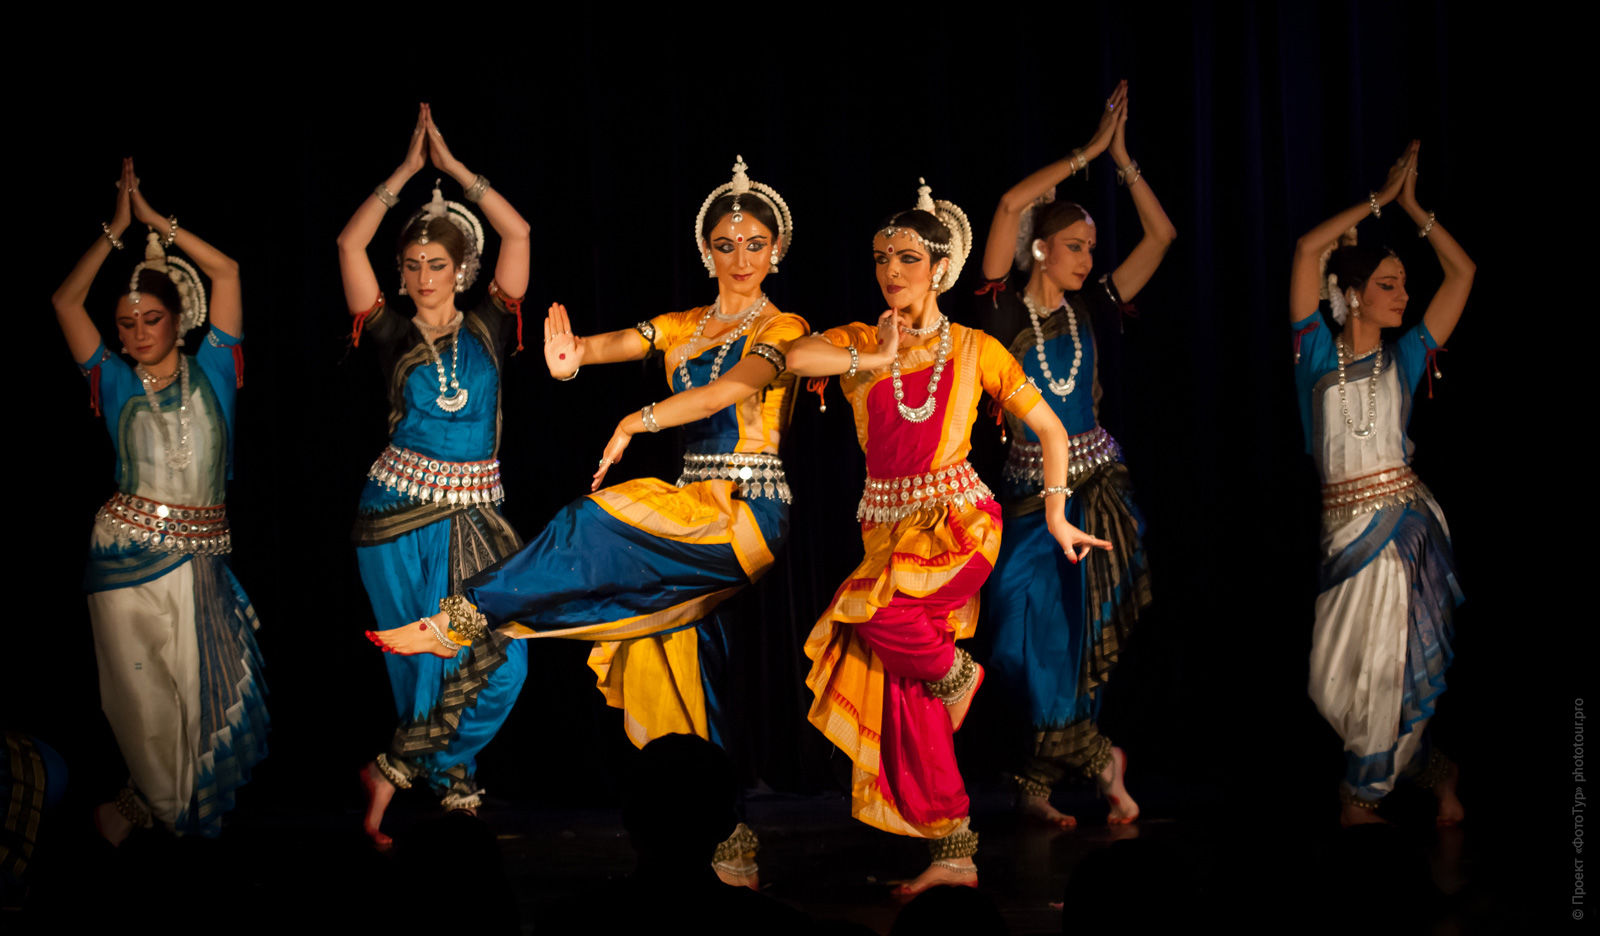 Традиционные национальные танцы в Джайпуре, тур по Индии, бюджетные туры в Индию, 2017 год.